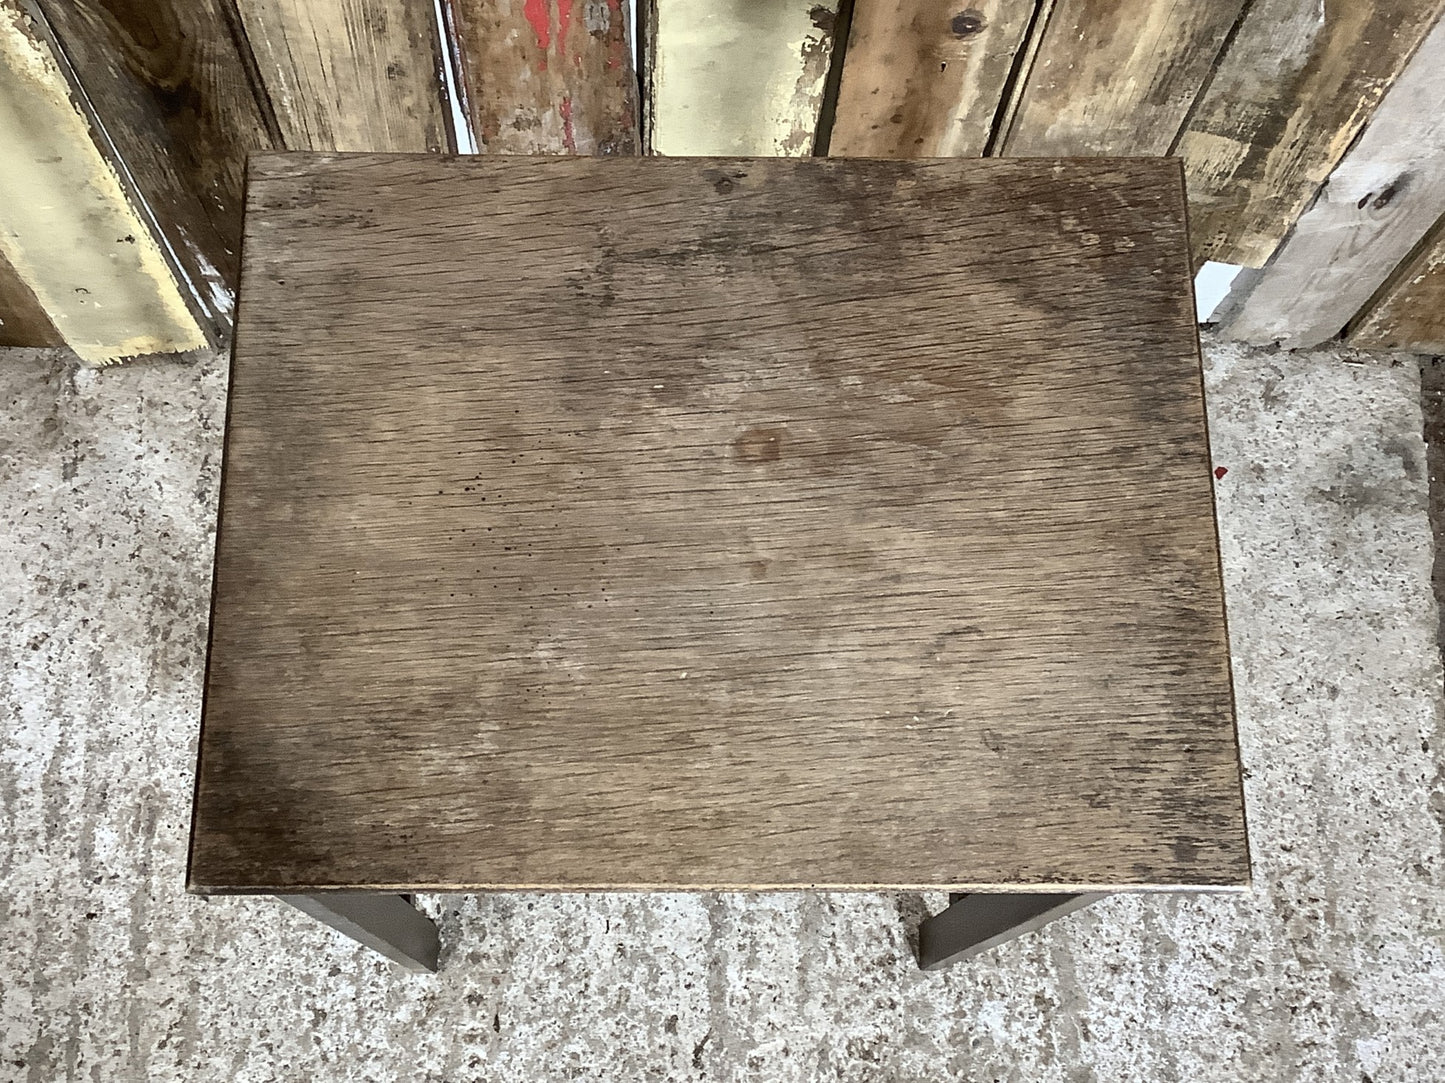 Simple Oak Frame Bedside Table TLC Needed